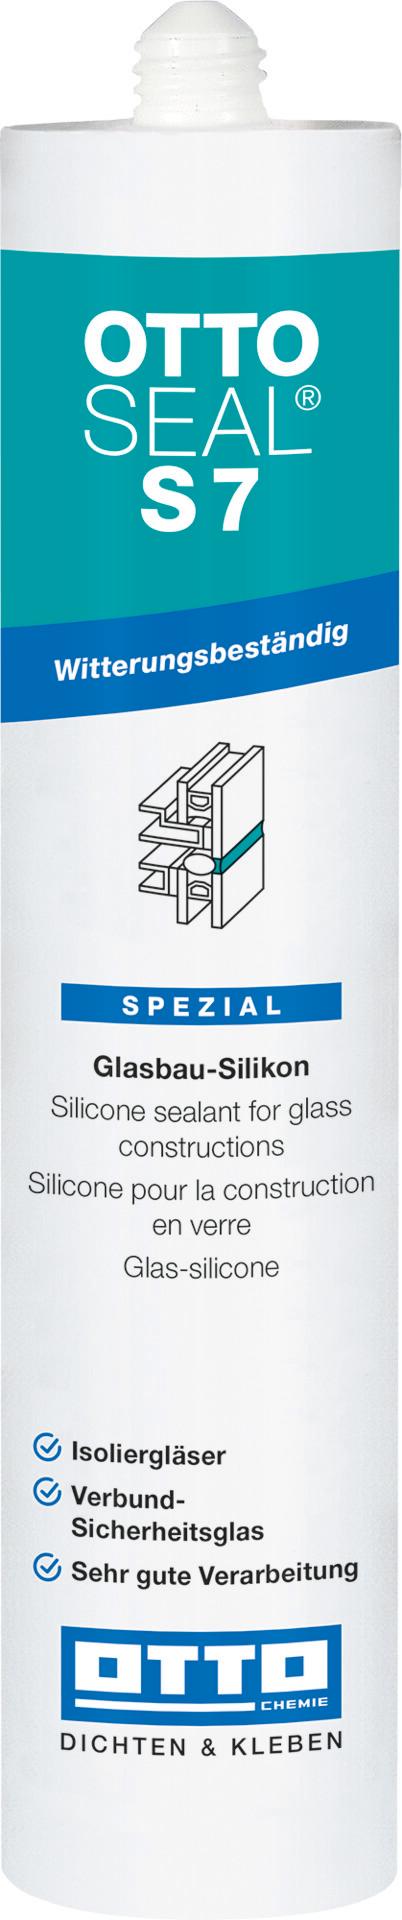 Fasádny silikón OTTOSEAL S7 310 ml